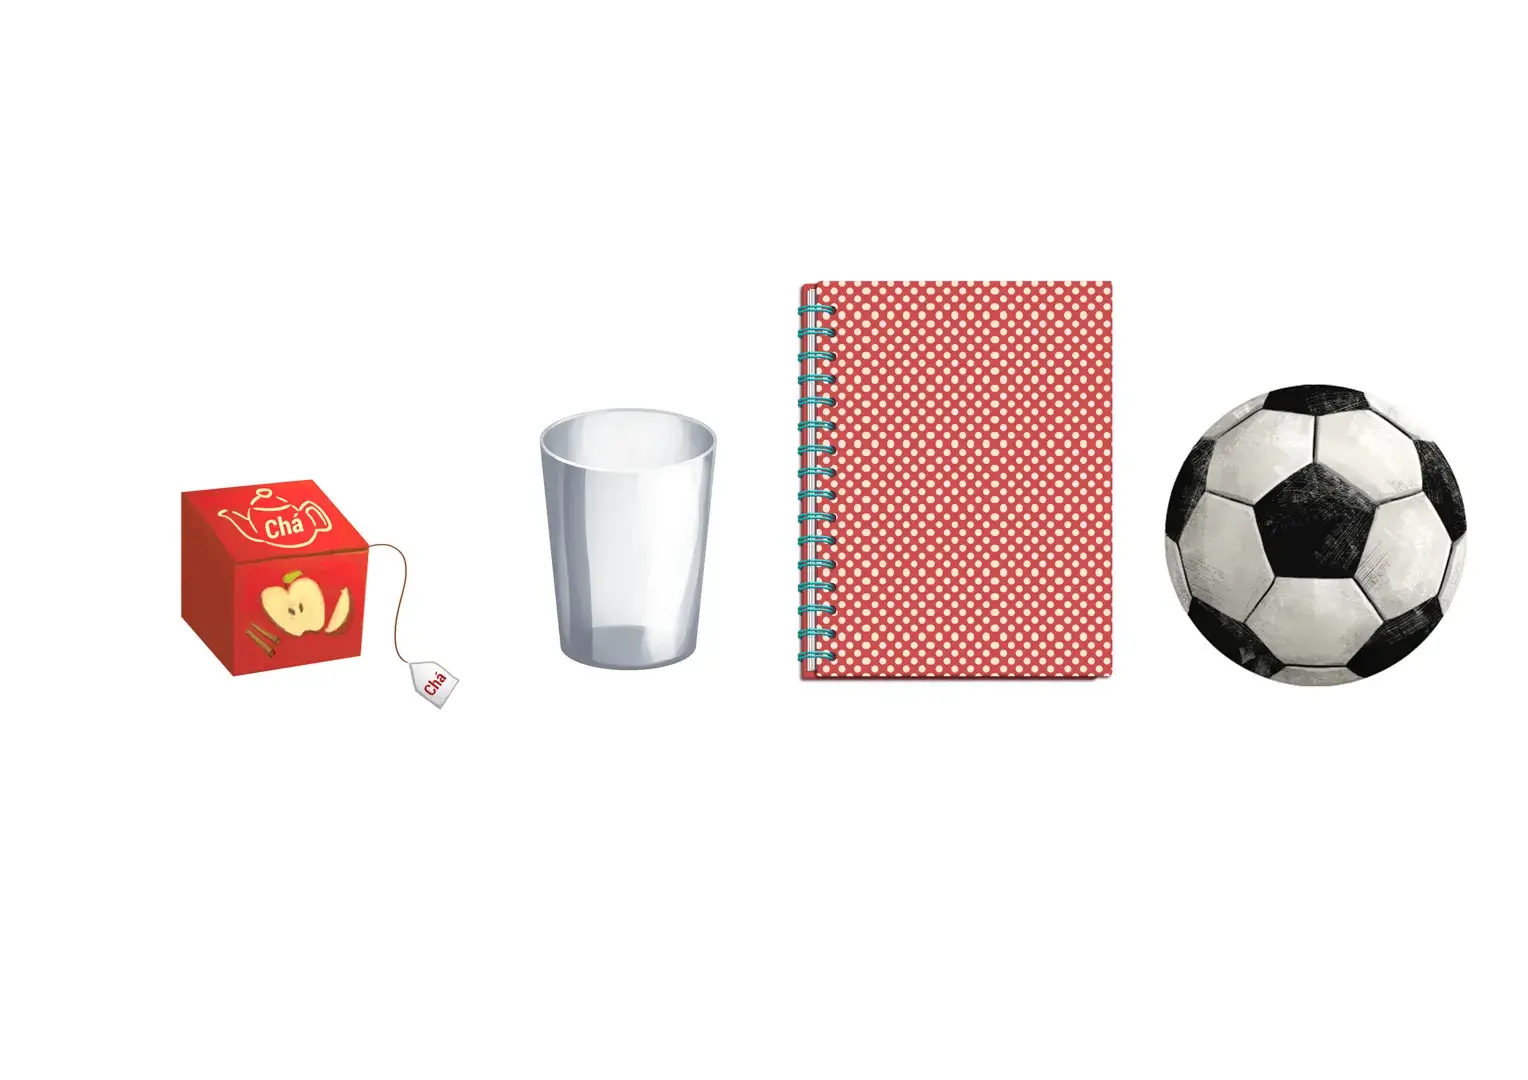 Caixa de chá copo caderno e bola de futebol - Ilustrado por André Martins